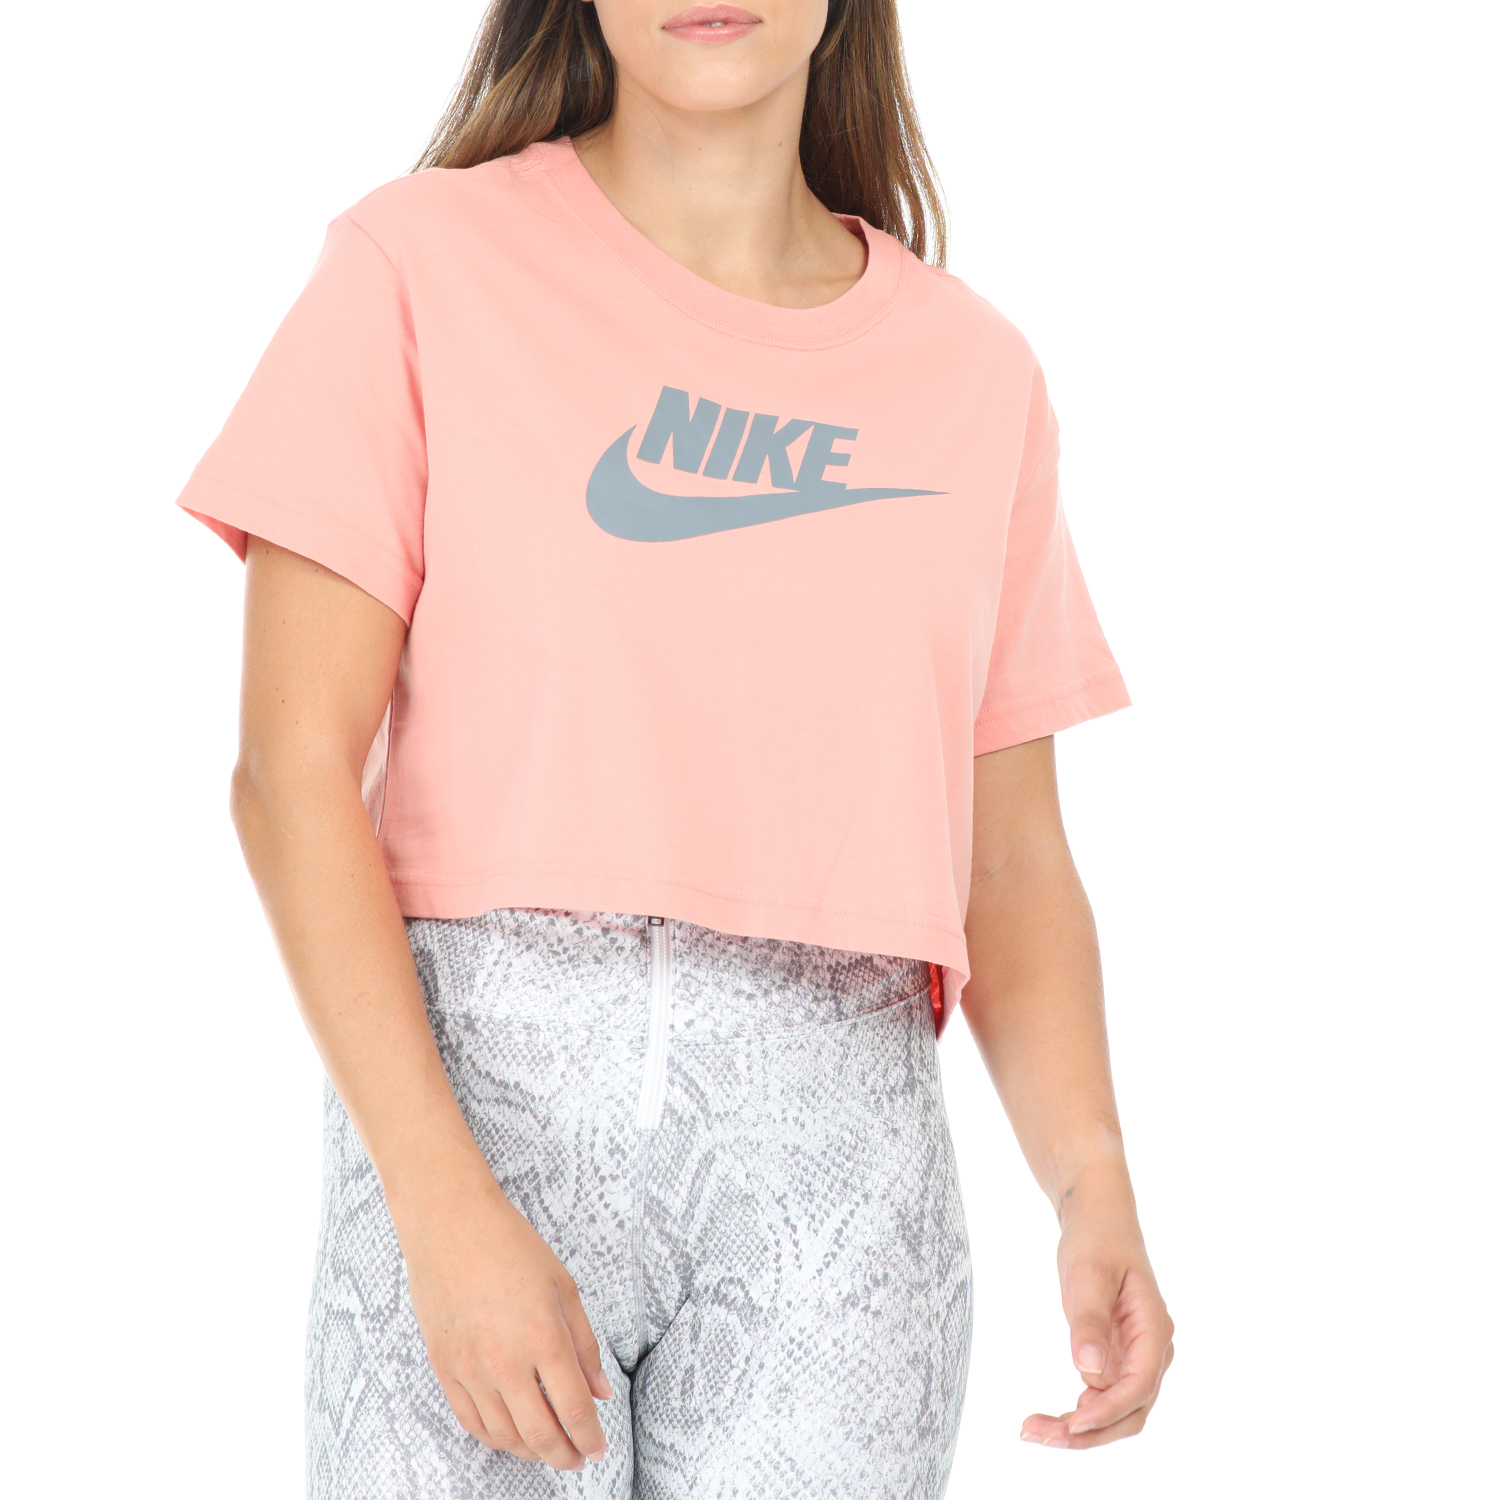 Γυναικεία/Ρούχα/Αθλητικά/T-shirt-Τοπ NIKE - Γυναικεία κοντομάνικη μπλούζα NIKE NSW CRP ICN FTR ροζ